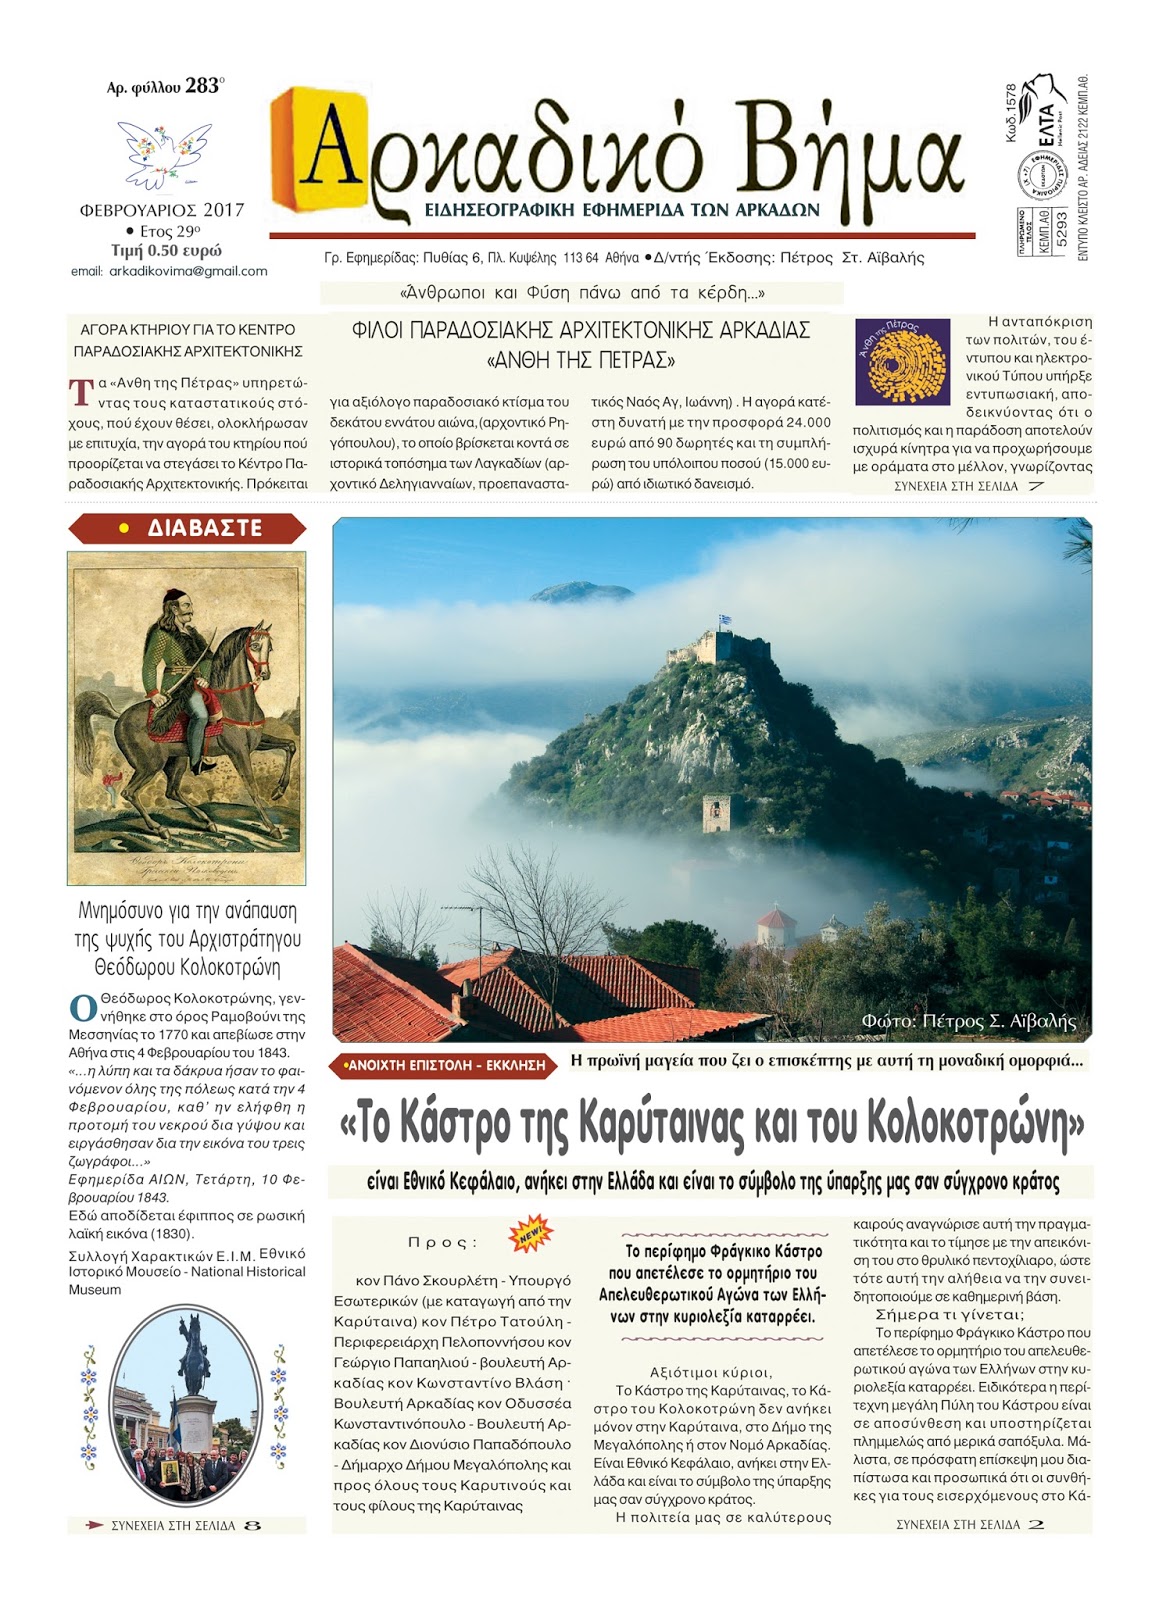 Αρκαδικό Βήμα, Φεβρ. 2017, "Το Κάστρο της Καρύταινας και του Κολοκοτρώνη είναι εθνικό κεφάλαιο